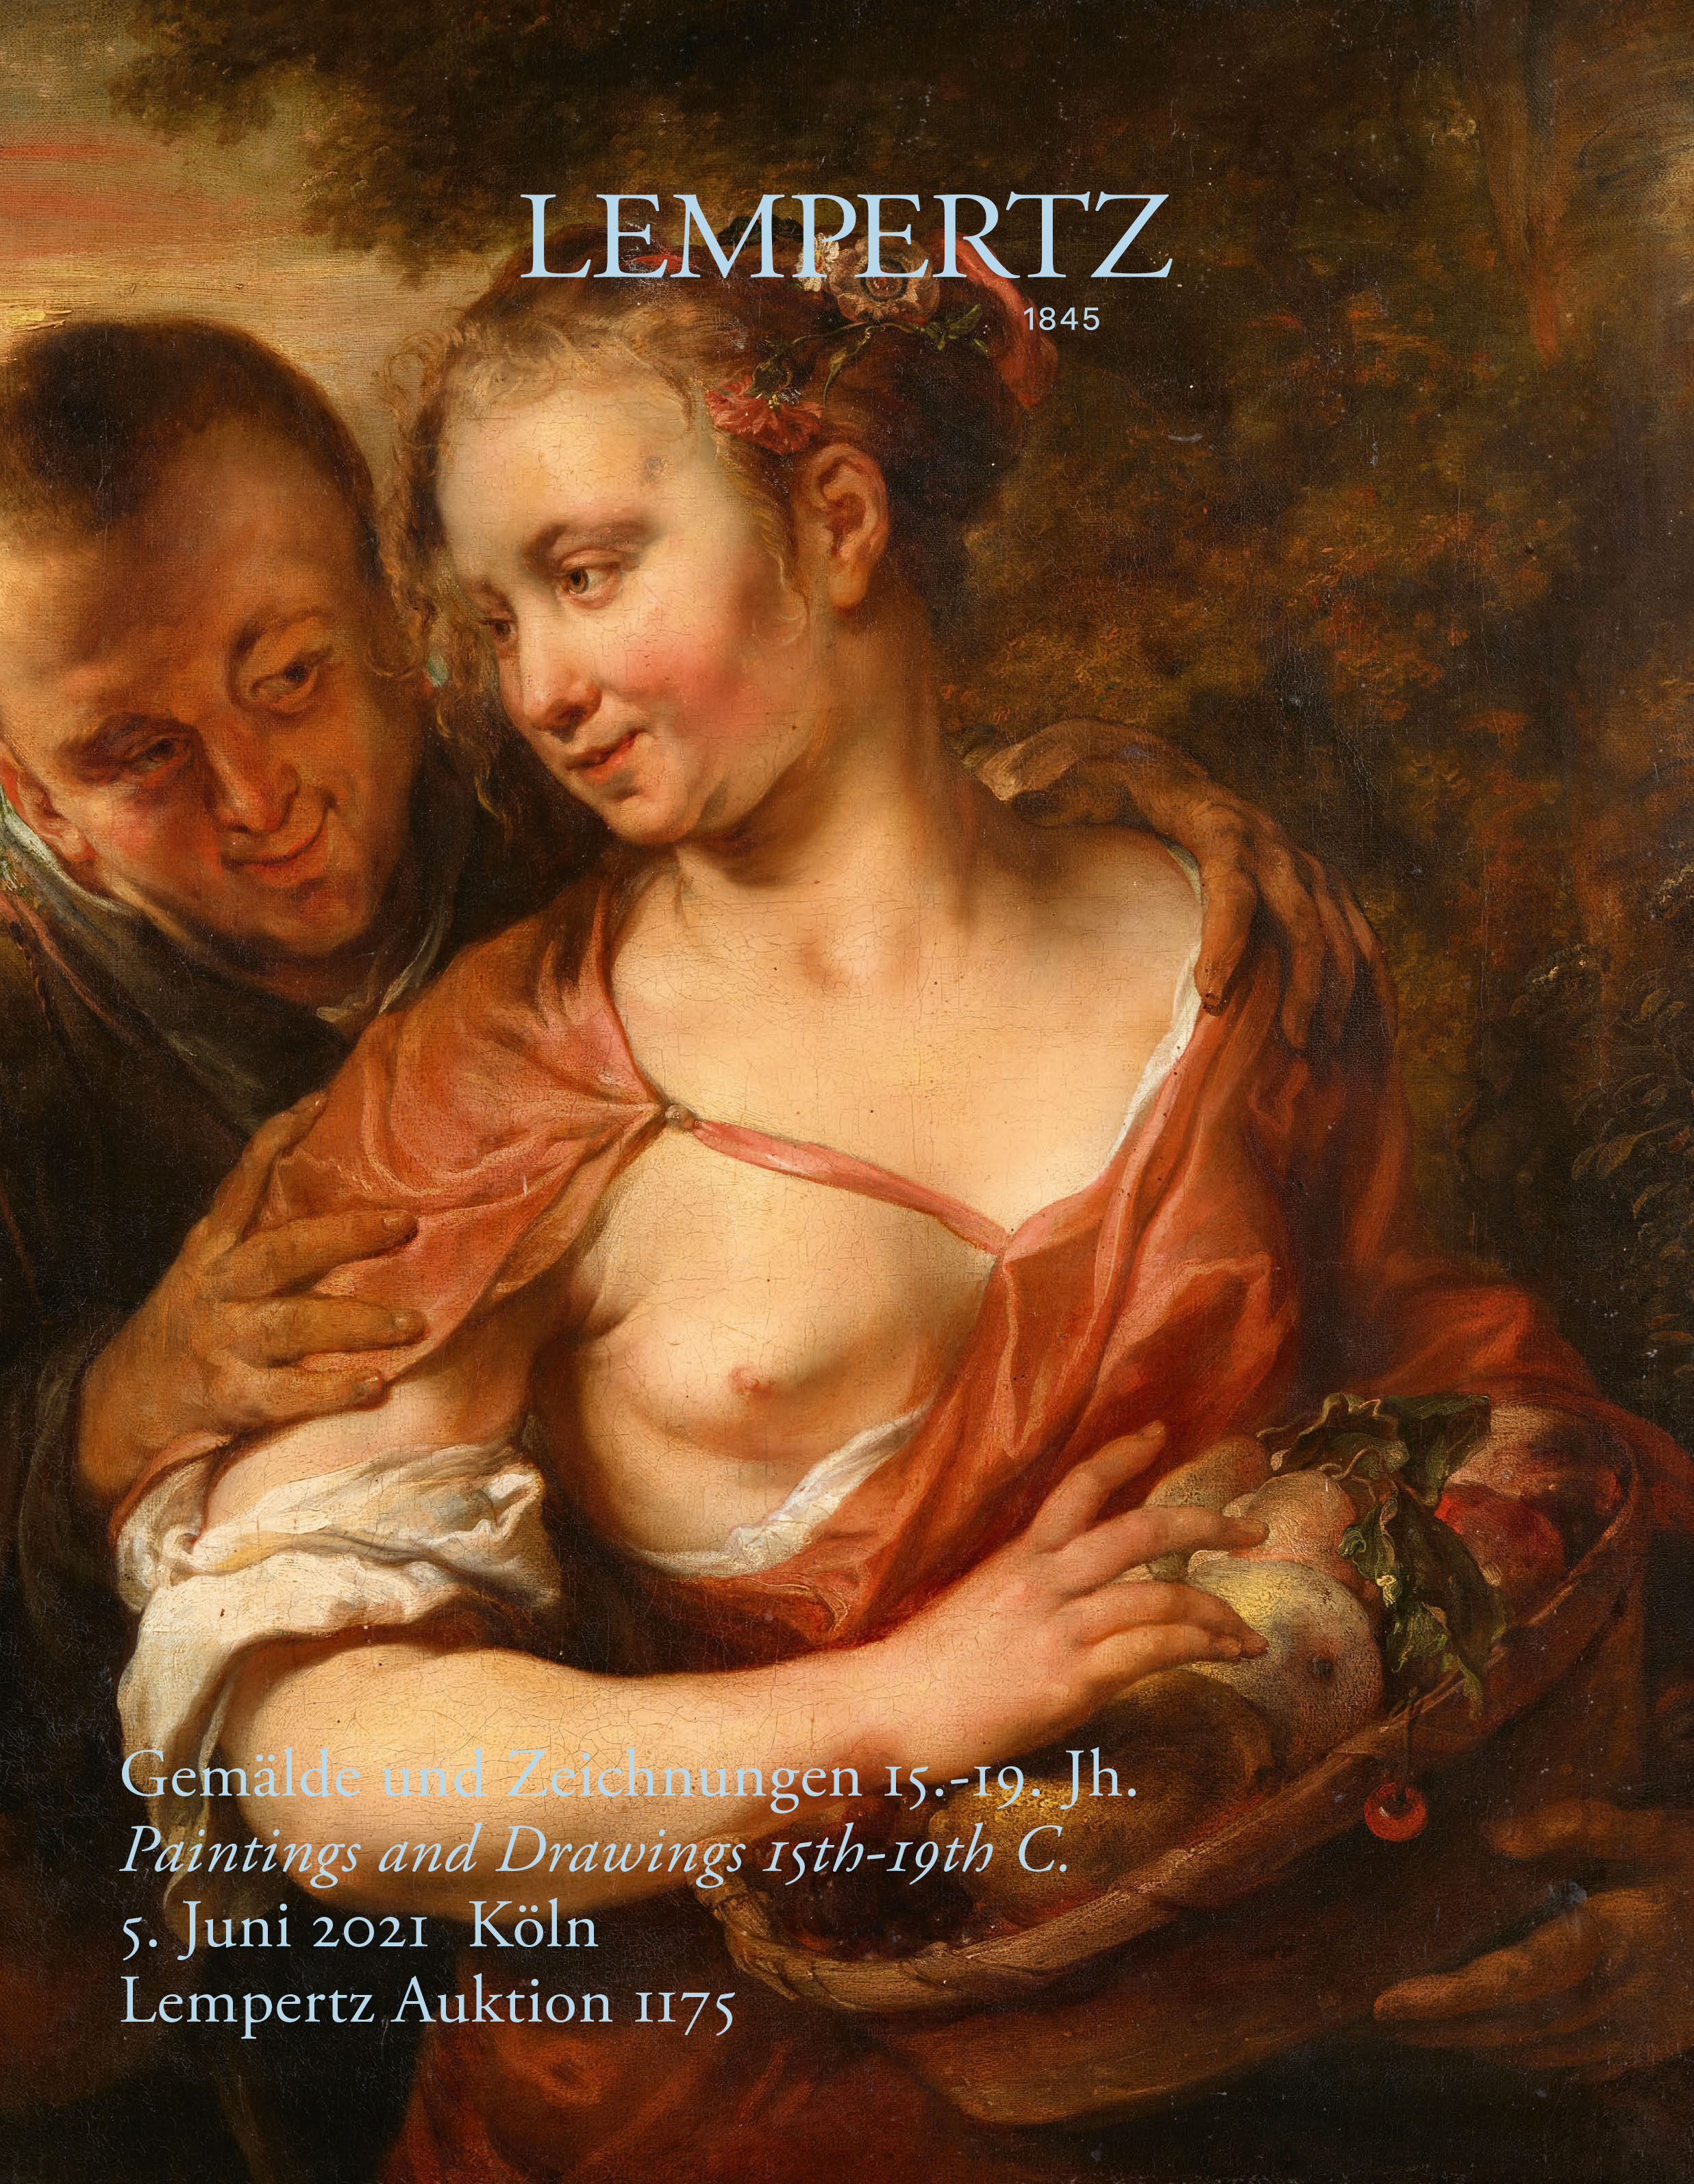 Auktionskatalog - Gemälde und Zeichnungen 15.-19. Jh. - Online Katalog - Auktion 1175 – Ersteigern Sie hochwertige Kunst in der nächsten Lempertz-Auktion!